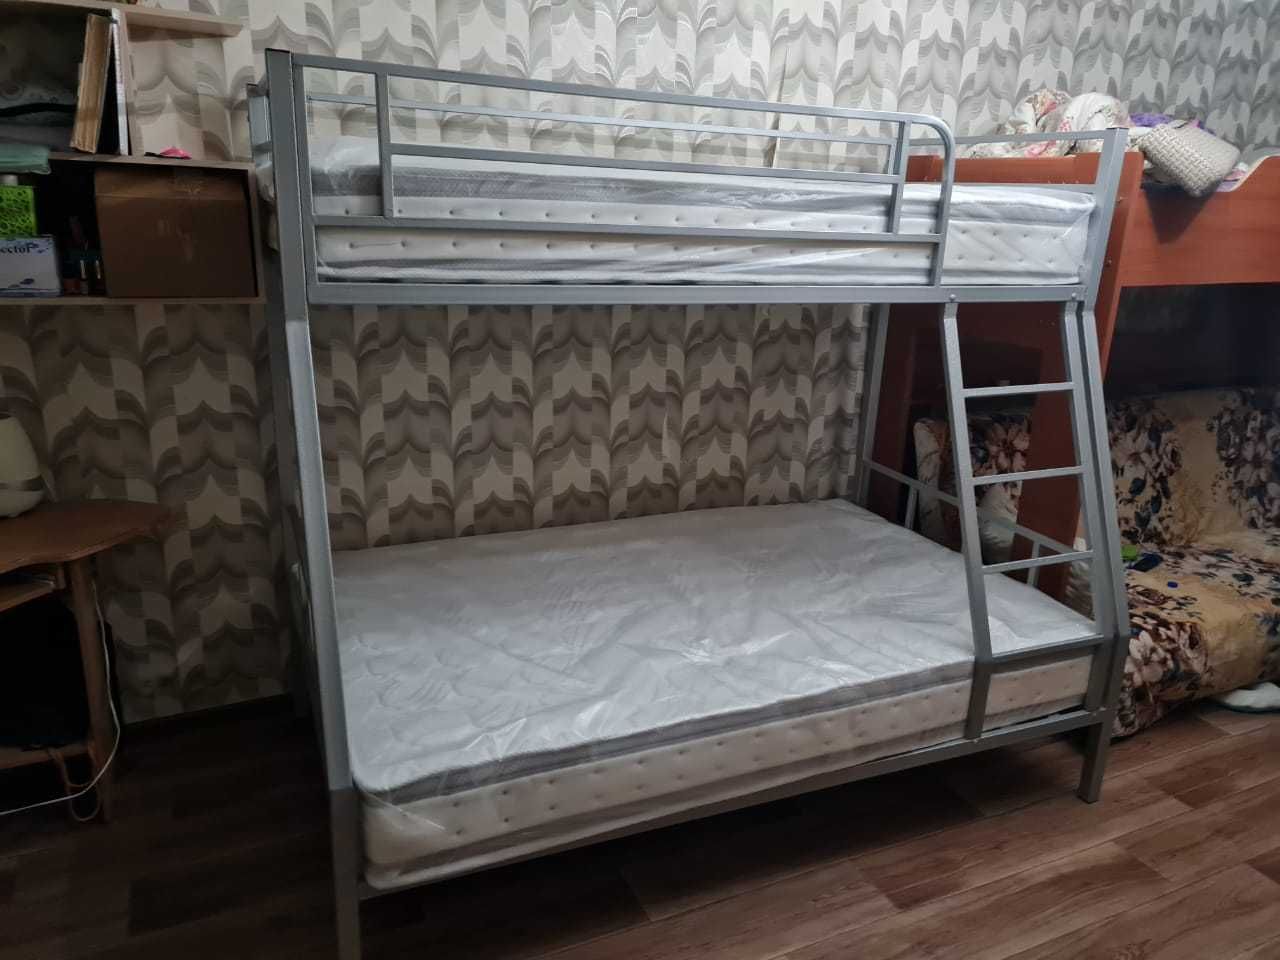 Прочная и устойчивая двухъярусная кровать для взрослых (двухярусная)